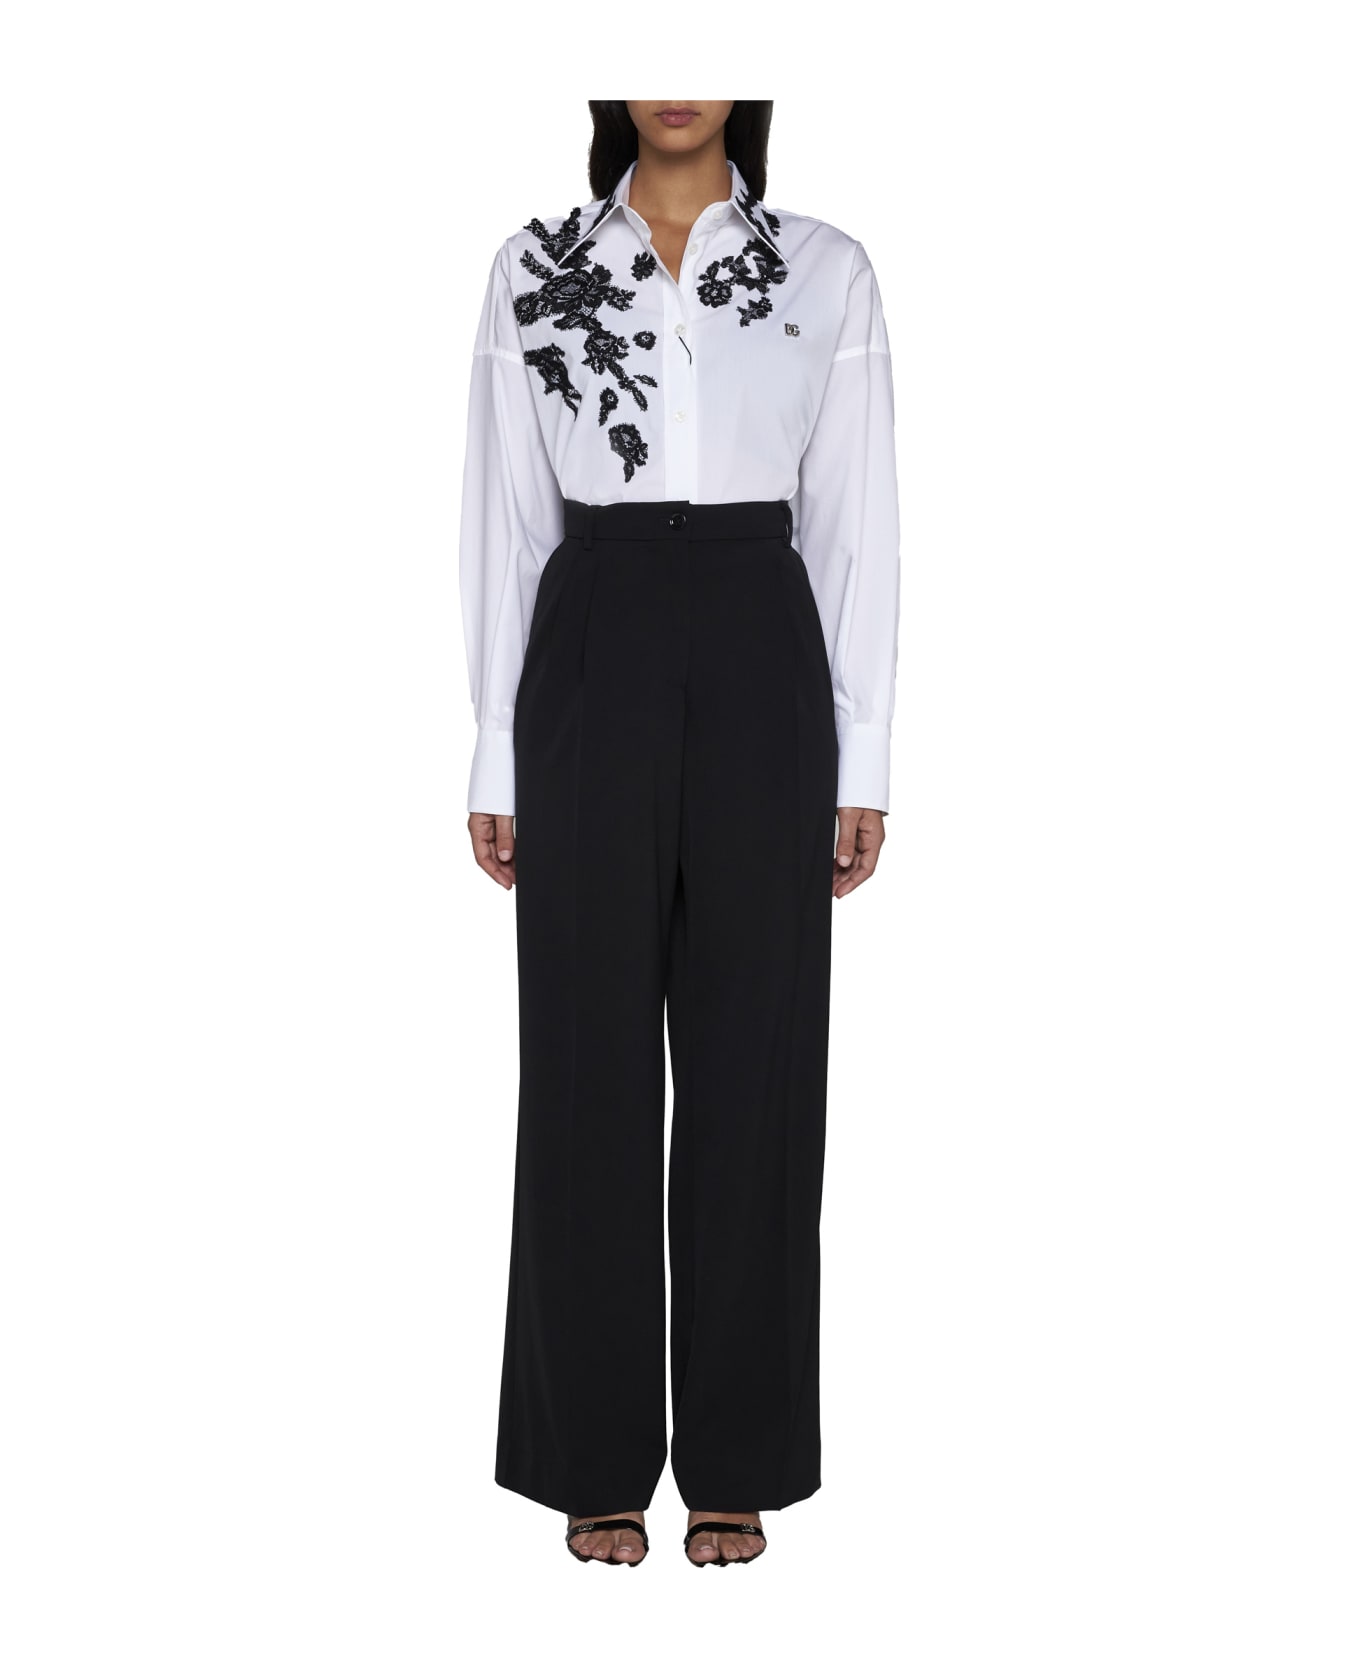 Dolce lenire & Gabbana Lace Appliques Oversize Shirt - Bianco otticco